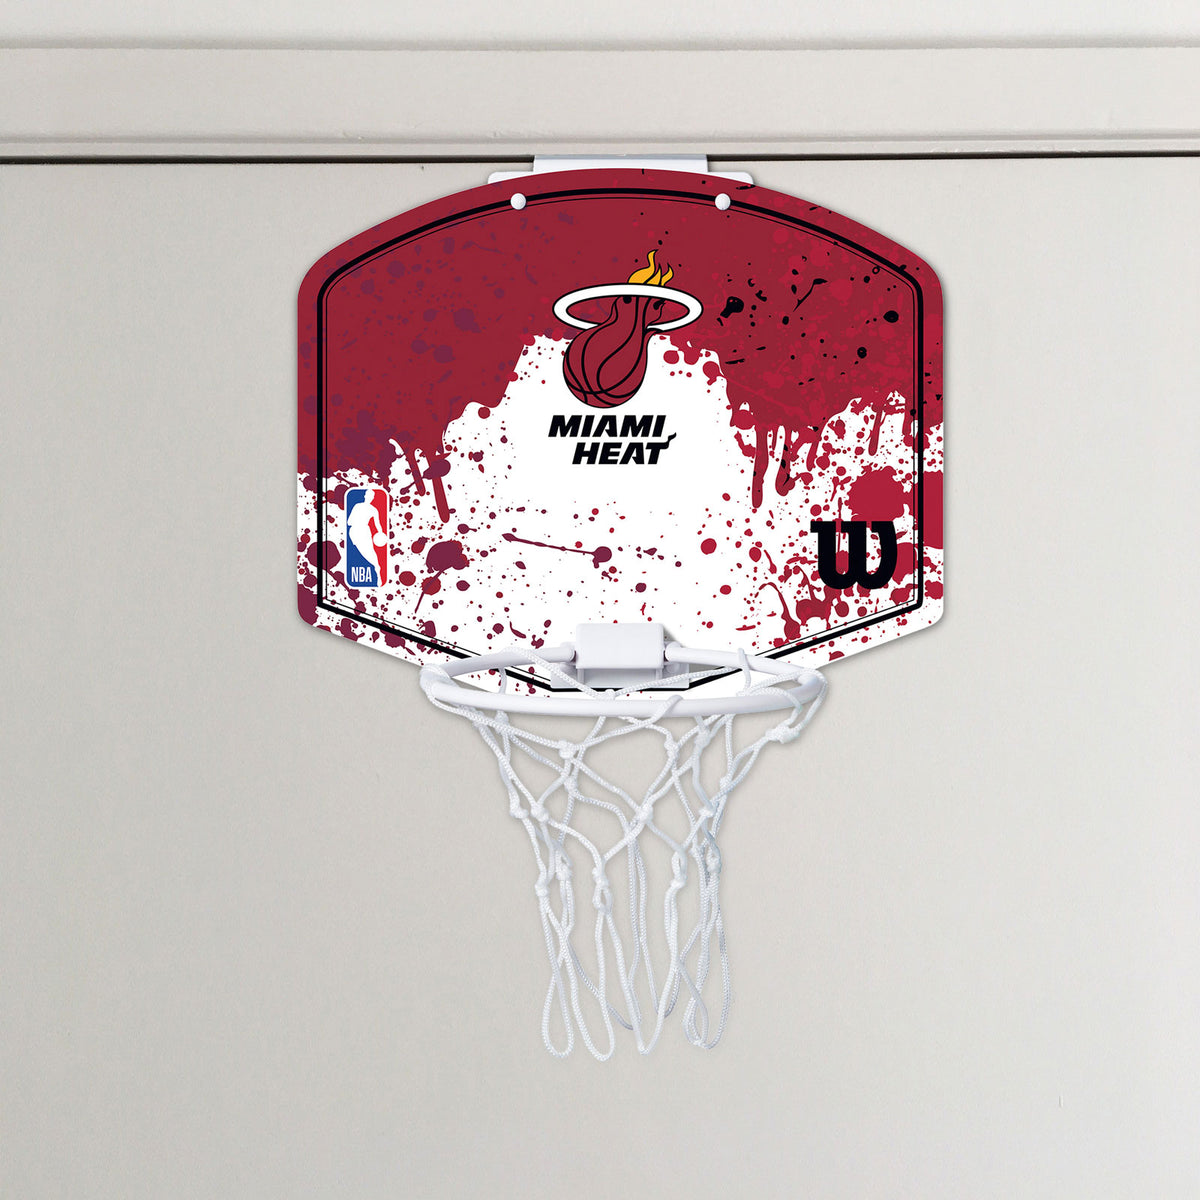 Miami Heat NBA Team Mini Hoop